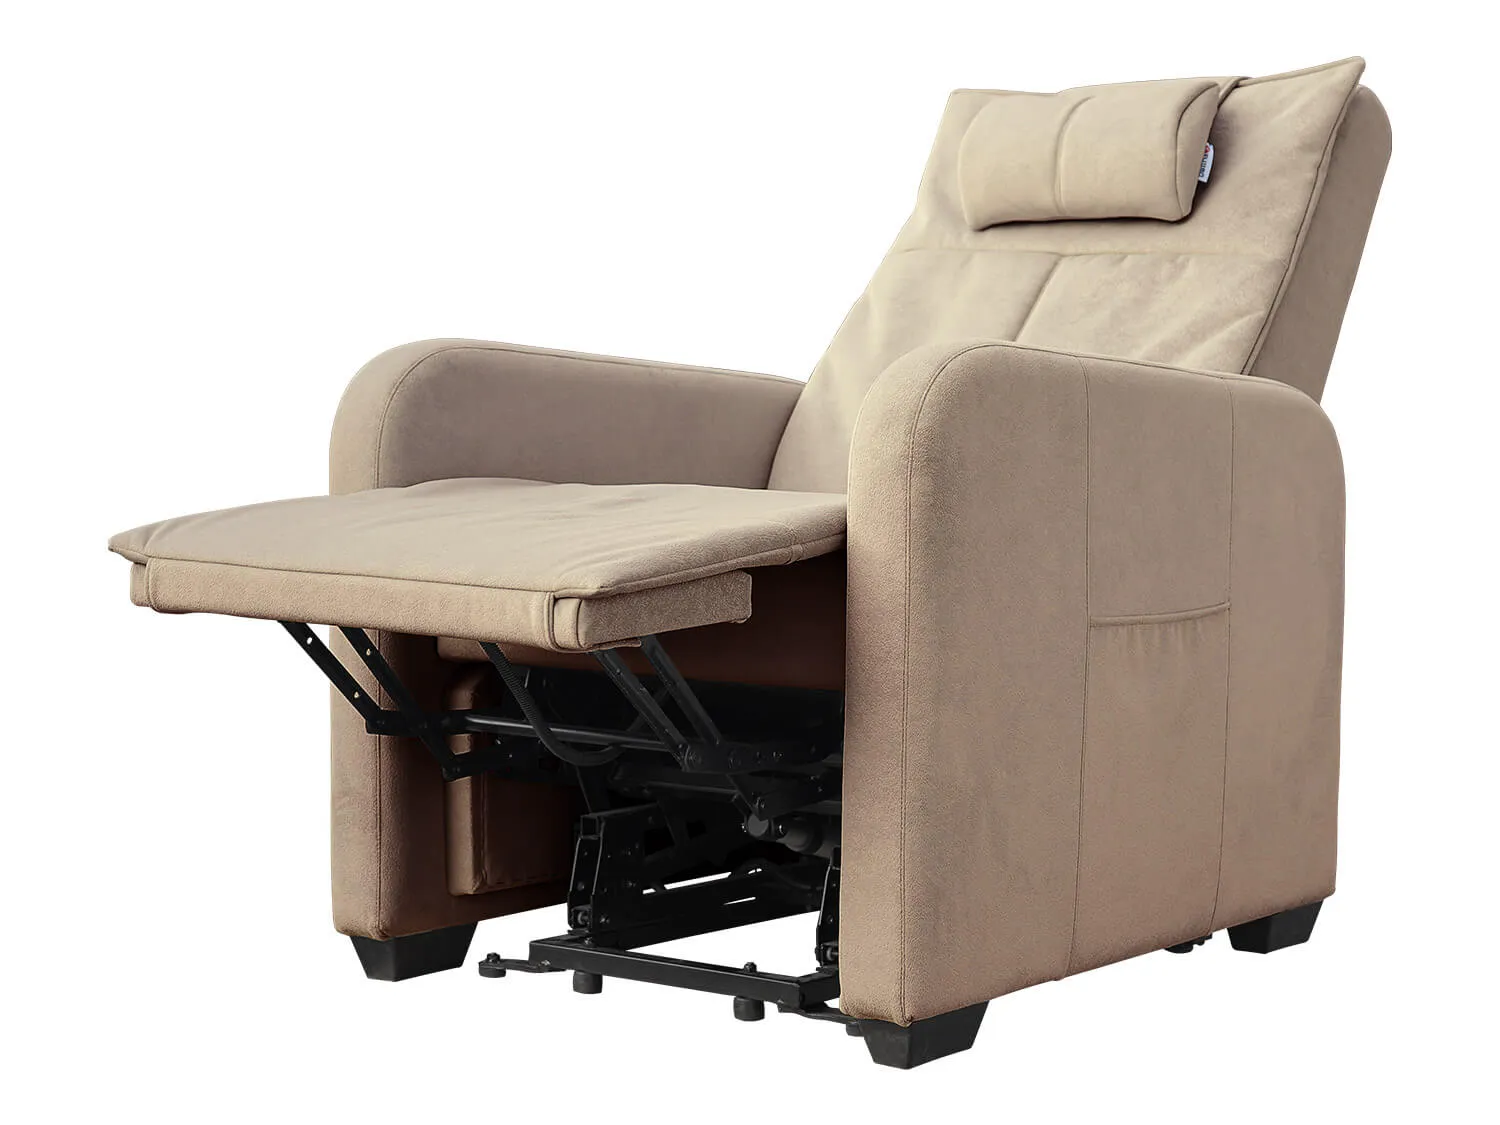 Кресло реклайнер с подъемом FUJIMO LIFT CHAIR F3005 FLWL цвет на заказ - 2 